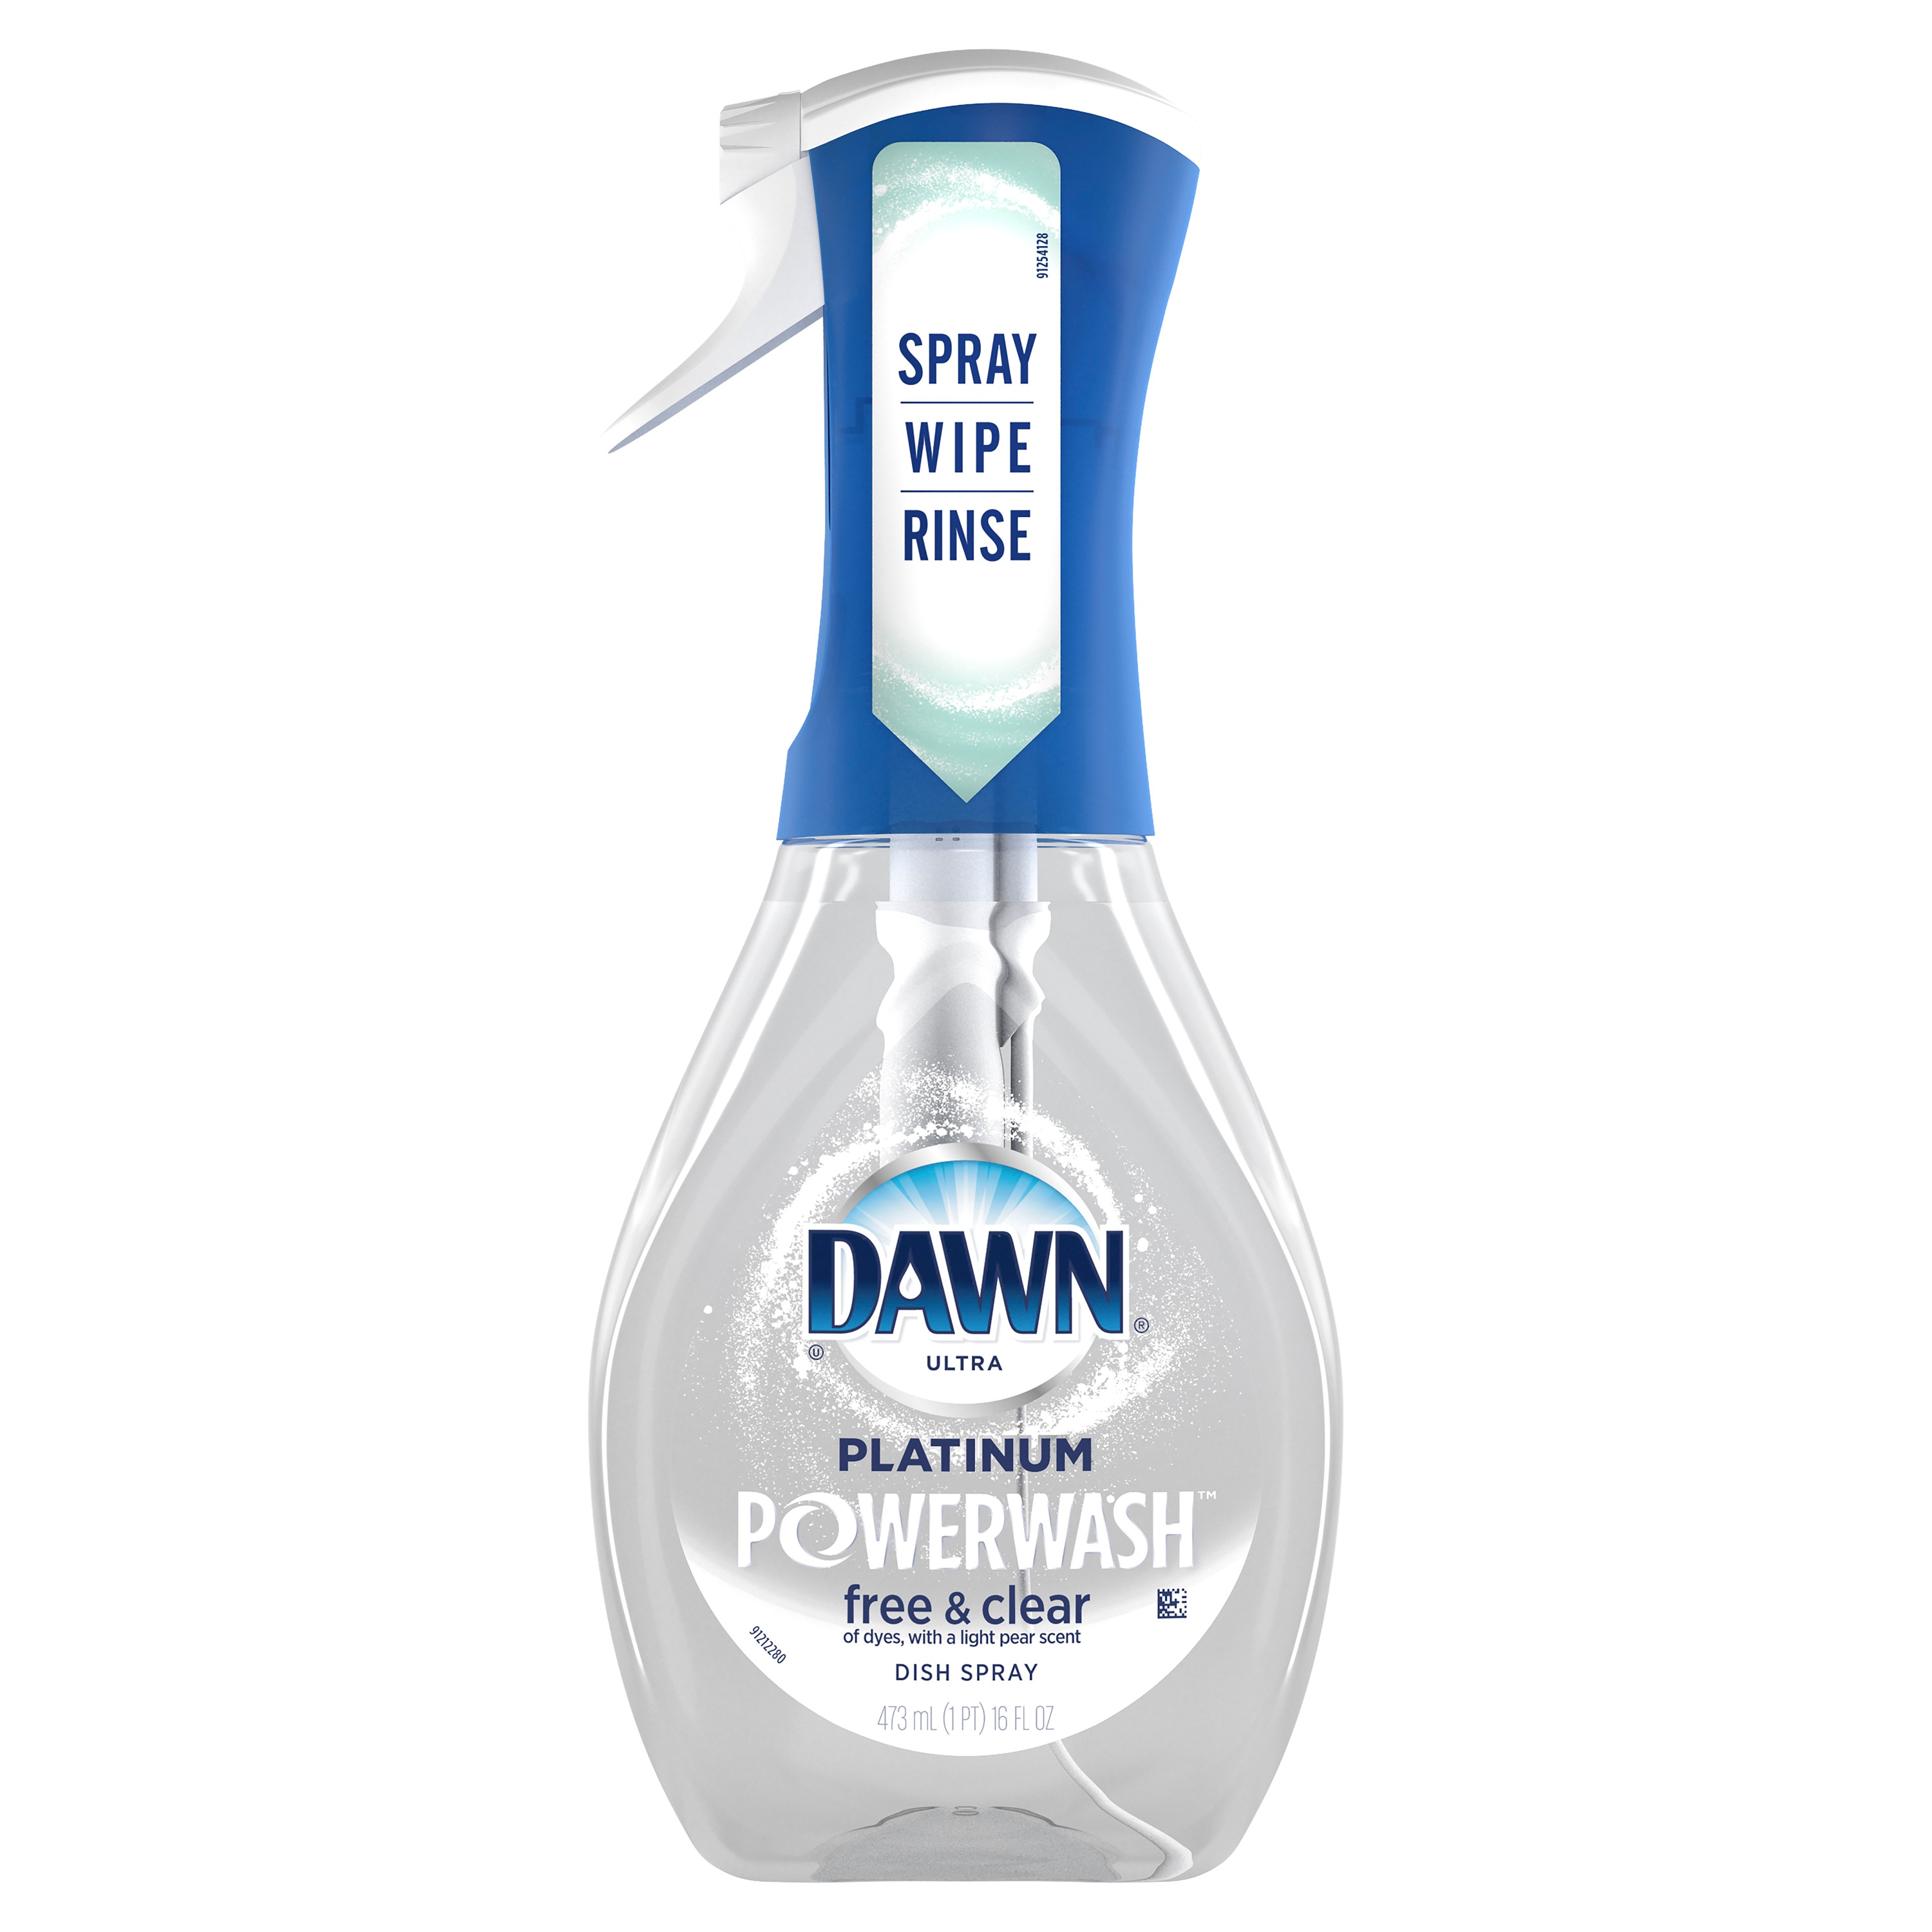 Dawn Platinum Powerwash Dish Soap Review